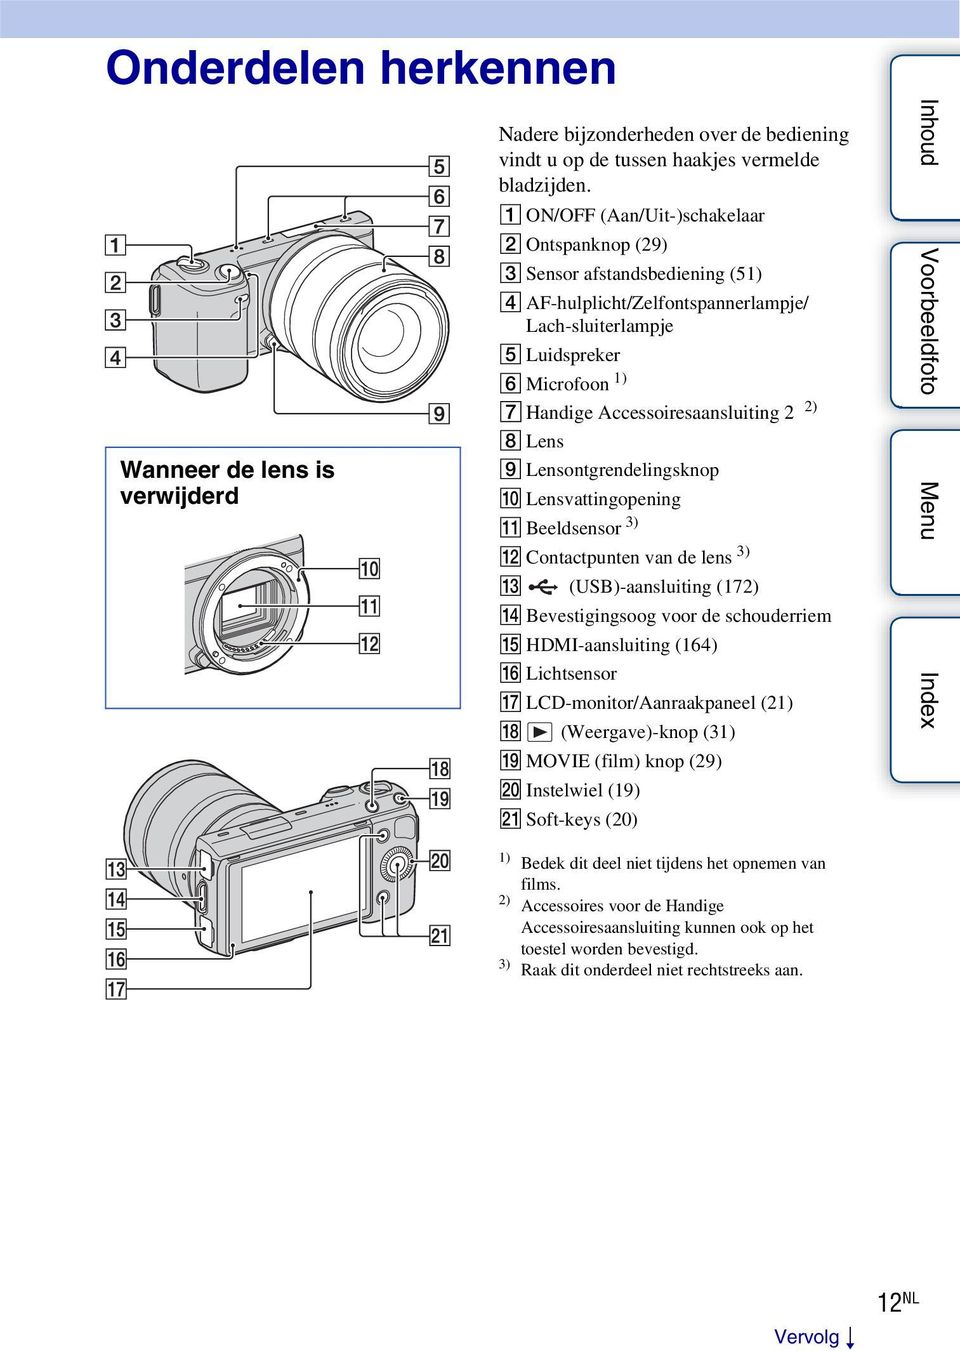 2 2) H Lens I Lensontgrendelingsknop J Lensvattingopening K Beeldsensor 3) L Contactpunten van de lens 3) M (USB)-aansluiting (172) N Bevestigingsoog voor de schouderriem O HDMI-aansluiting (164) P